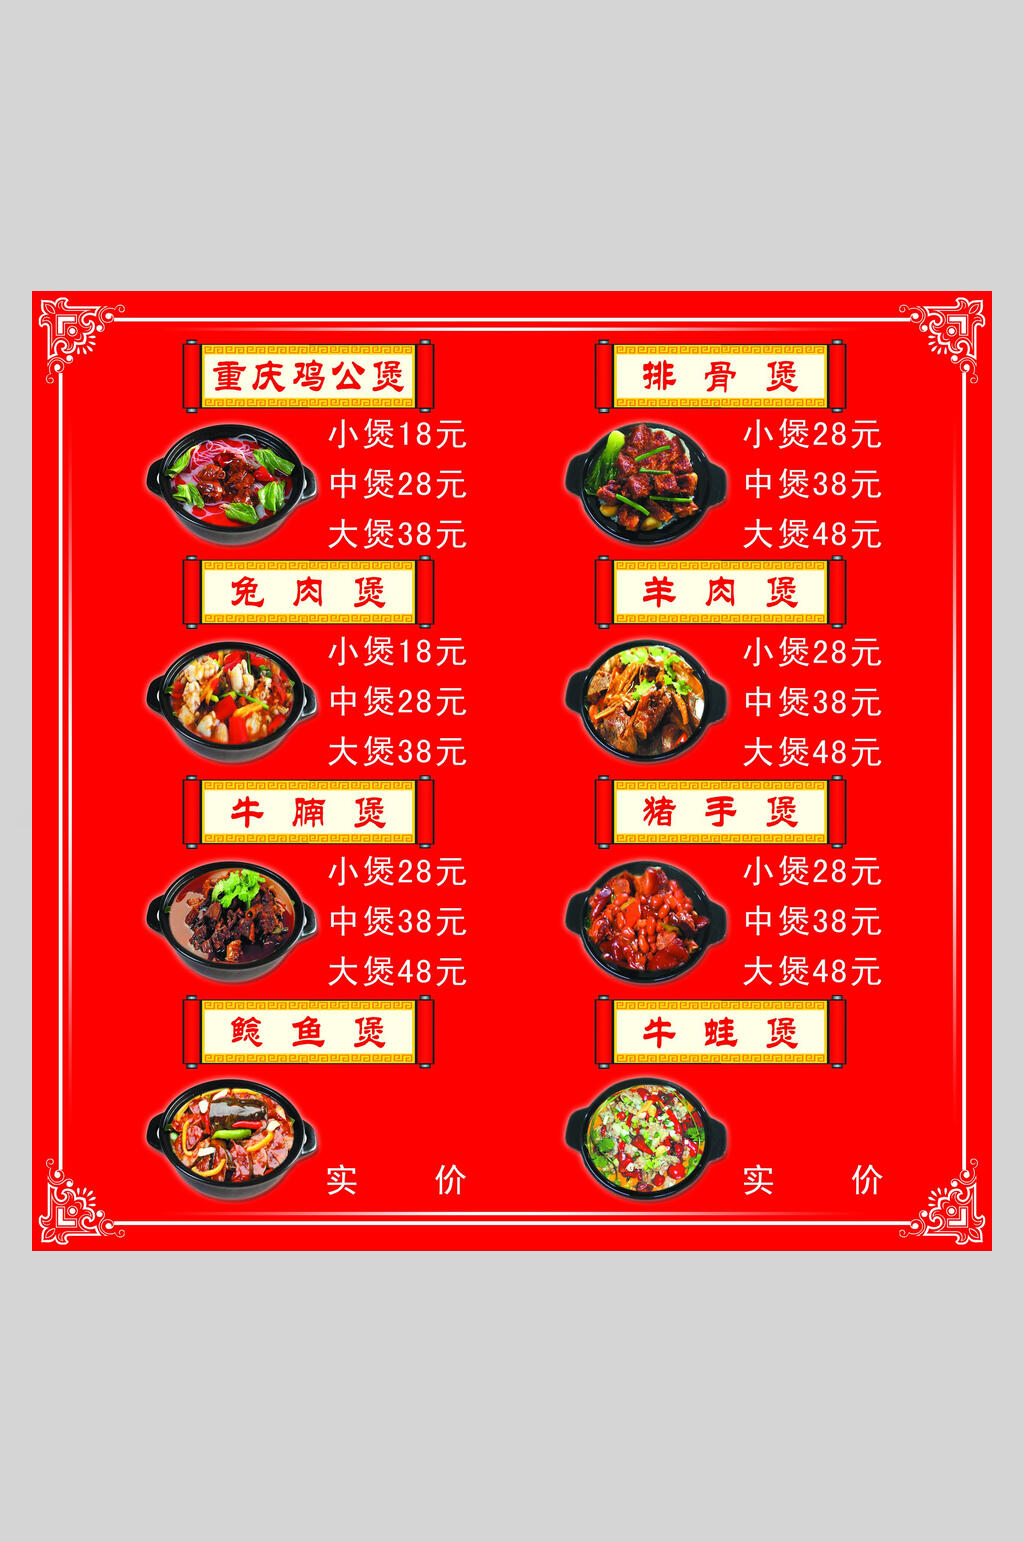 重庆鸡公煲快餐店价格表宣传海报